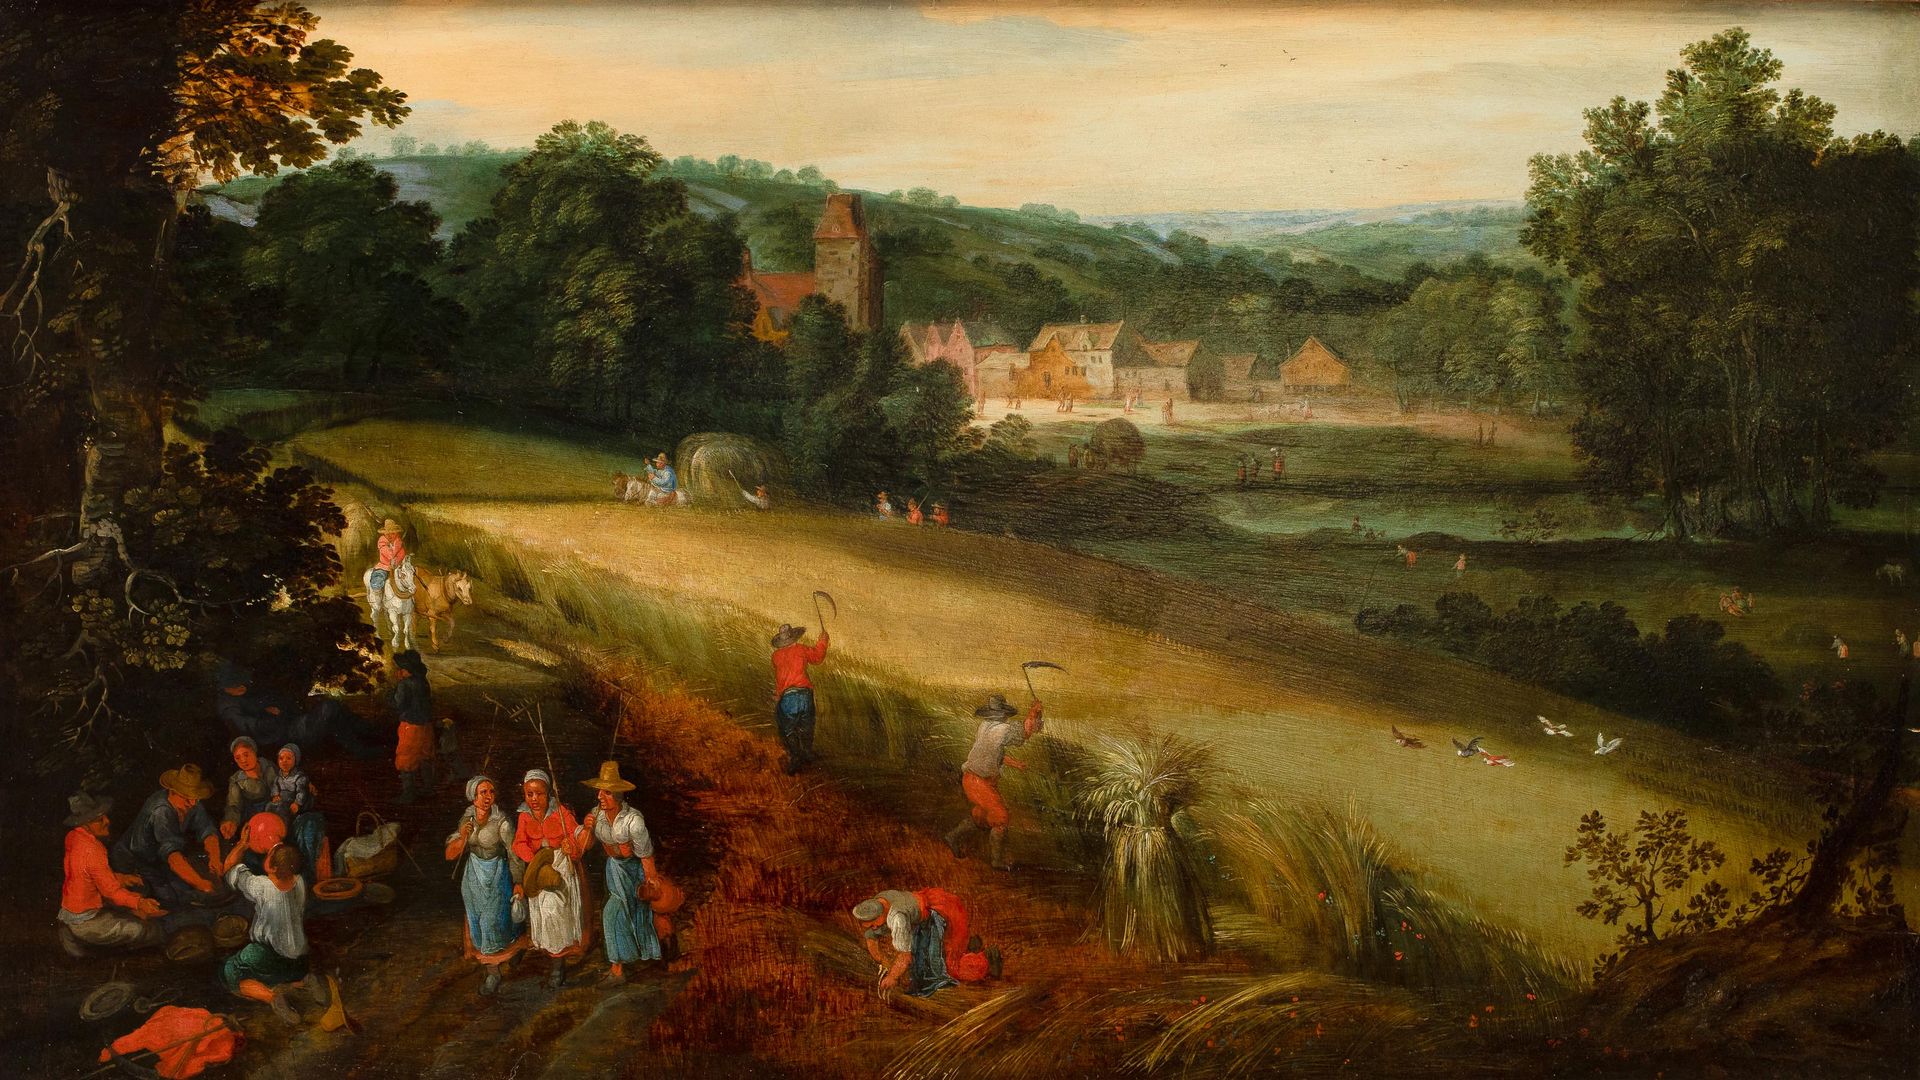 JAN BRUEGHEL I (1568-1625) (模仿者)

有玉米收获的风景（寓意夏天？）

小组。

出处和照片证明。

弗洛伦斯-德-沃尔代尔画廊，&hellip;